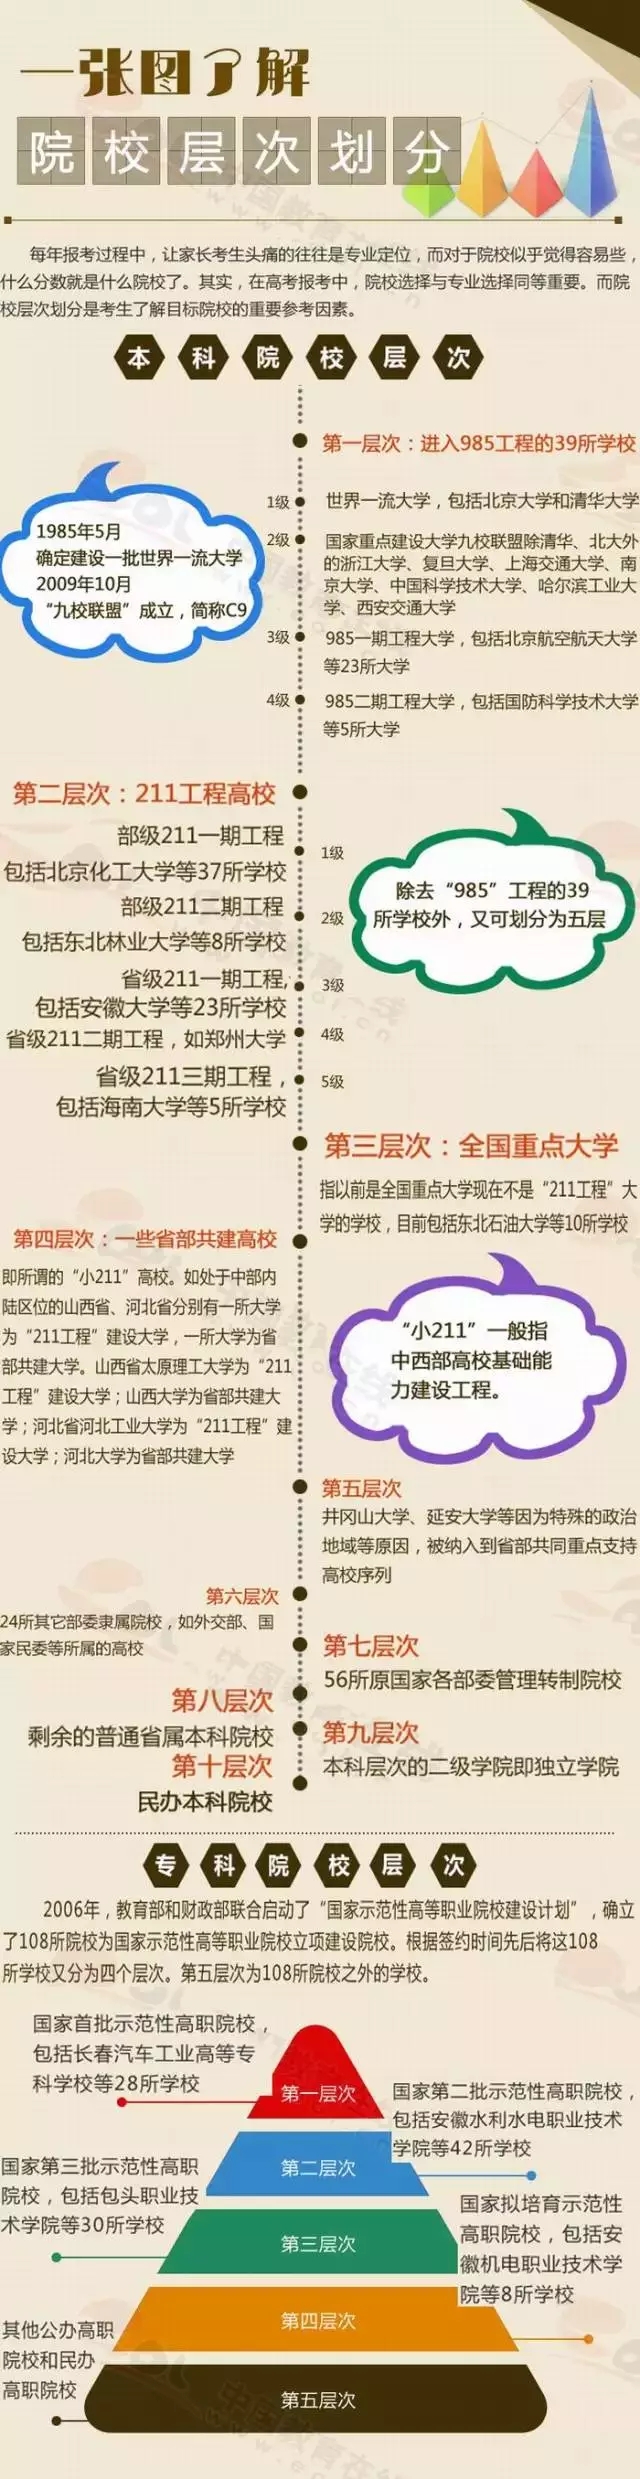 一图看懂中国大学的层次划分1